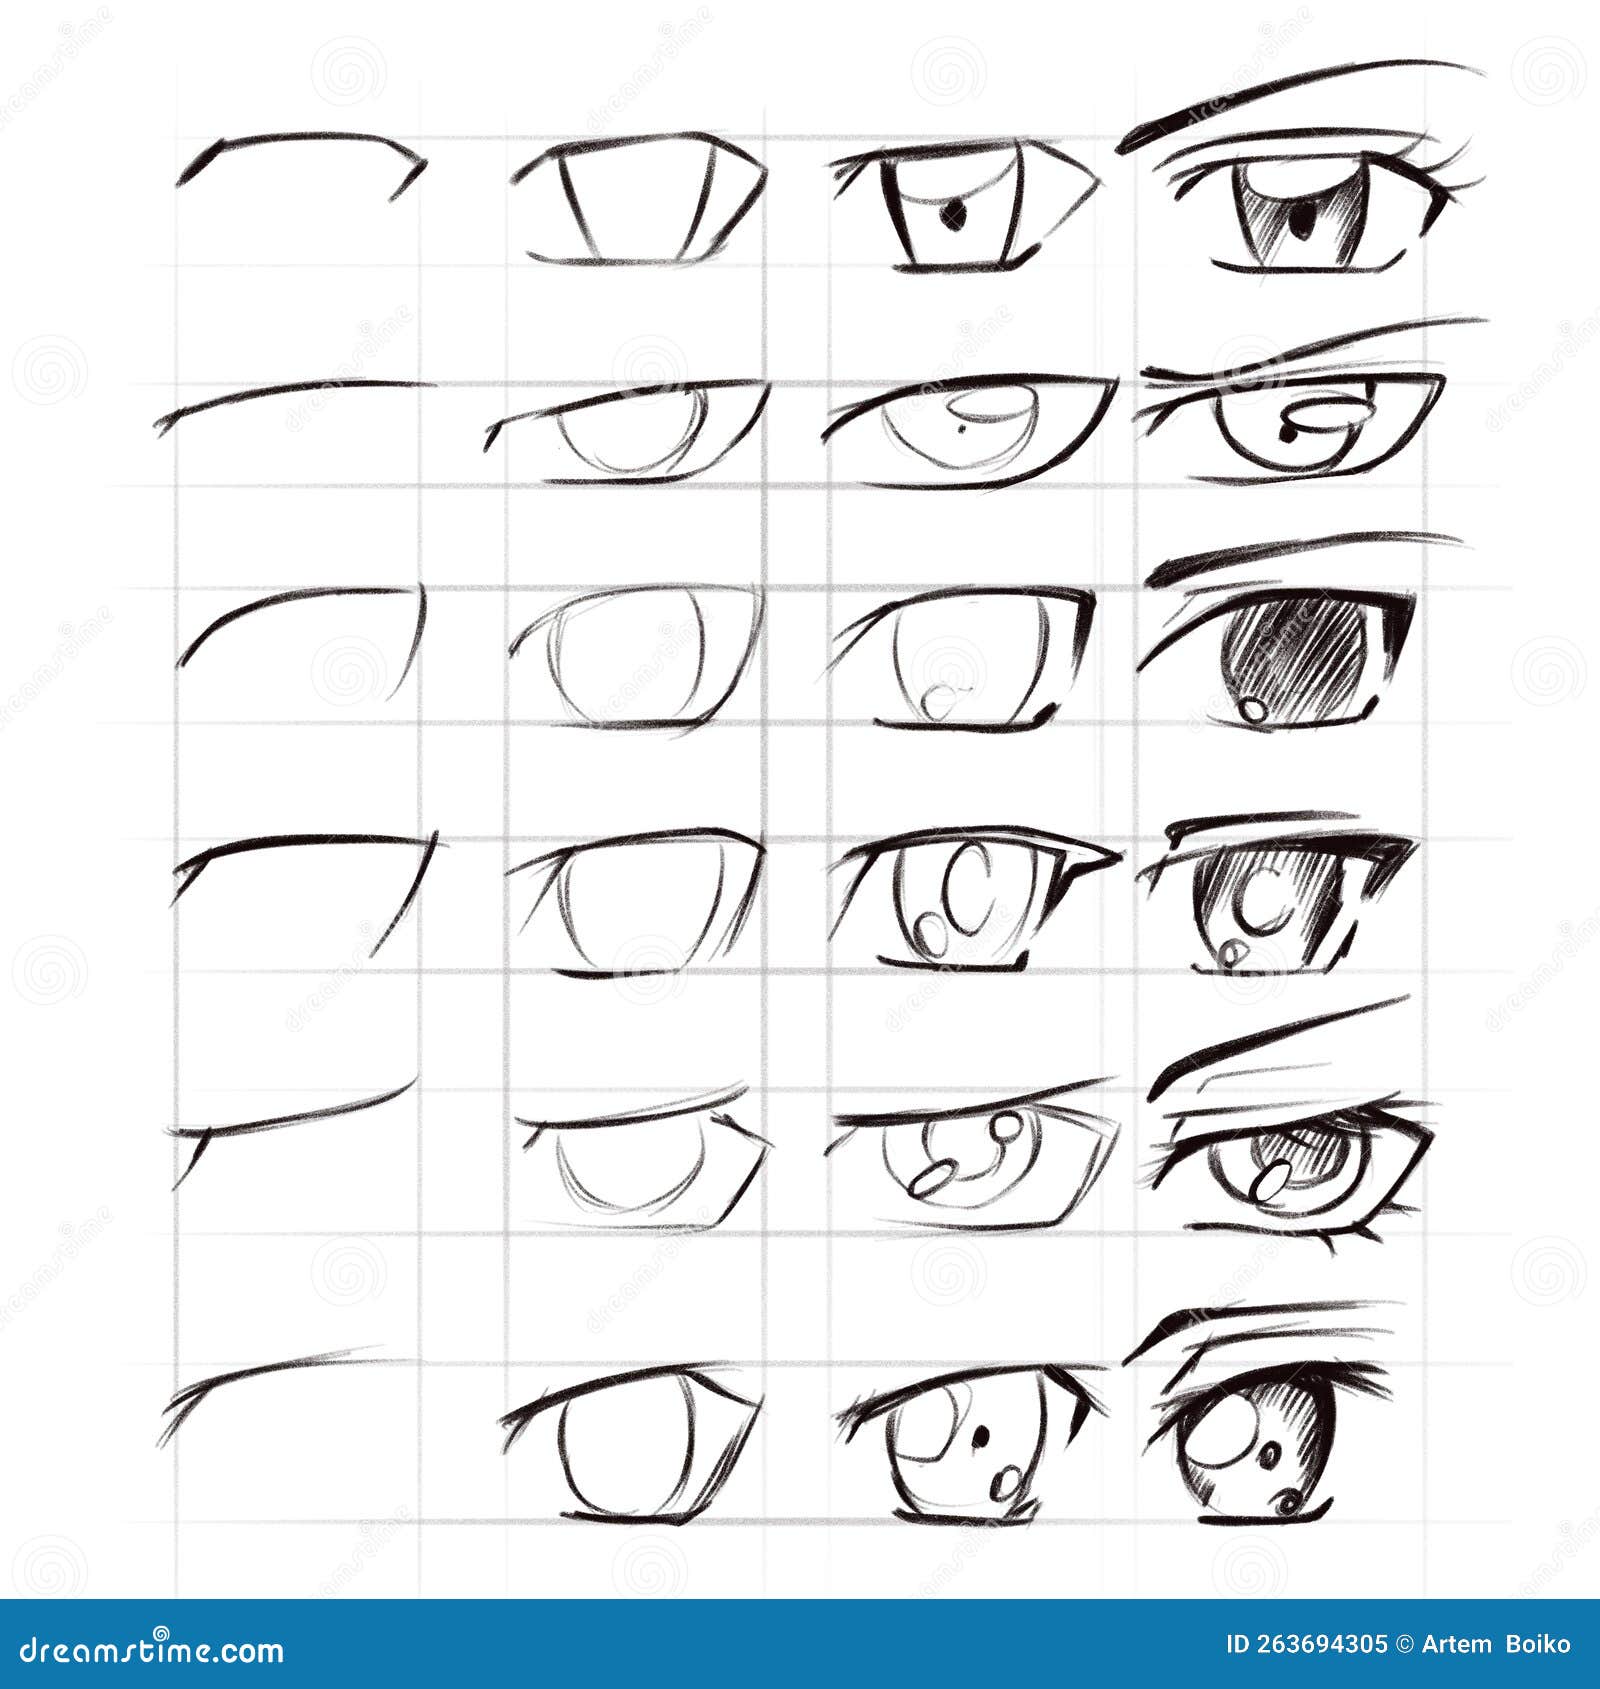  tutorial: come disegnare un volto in stile manga  Illustrazioni  cartoon, Come disegnare, Come disegnare anime